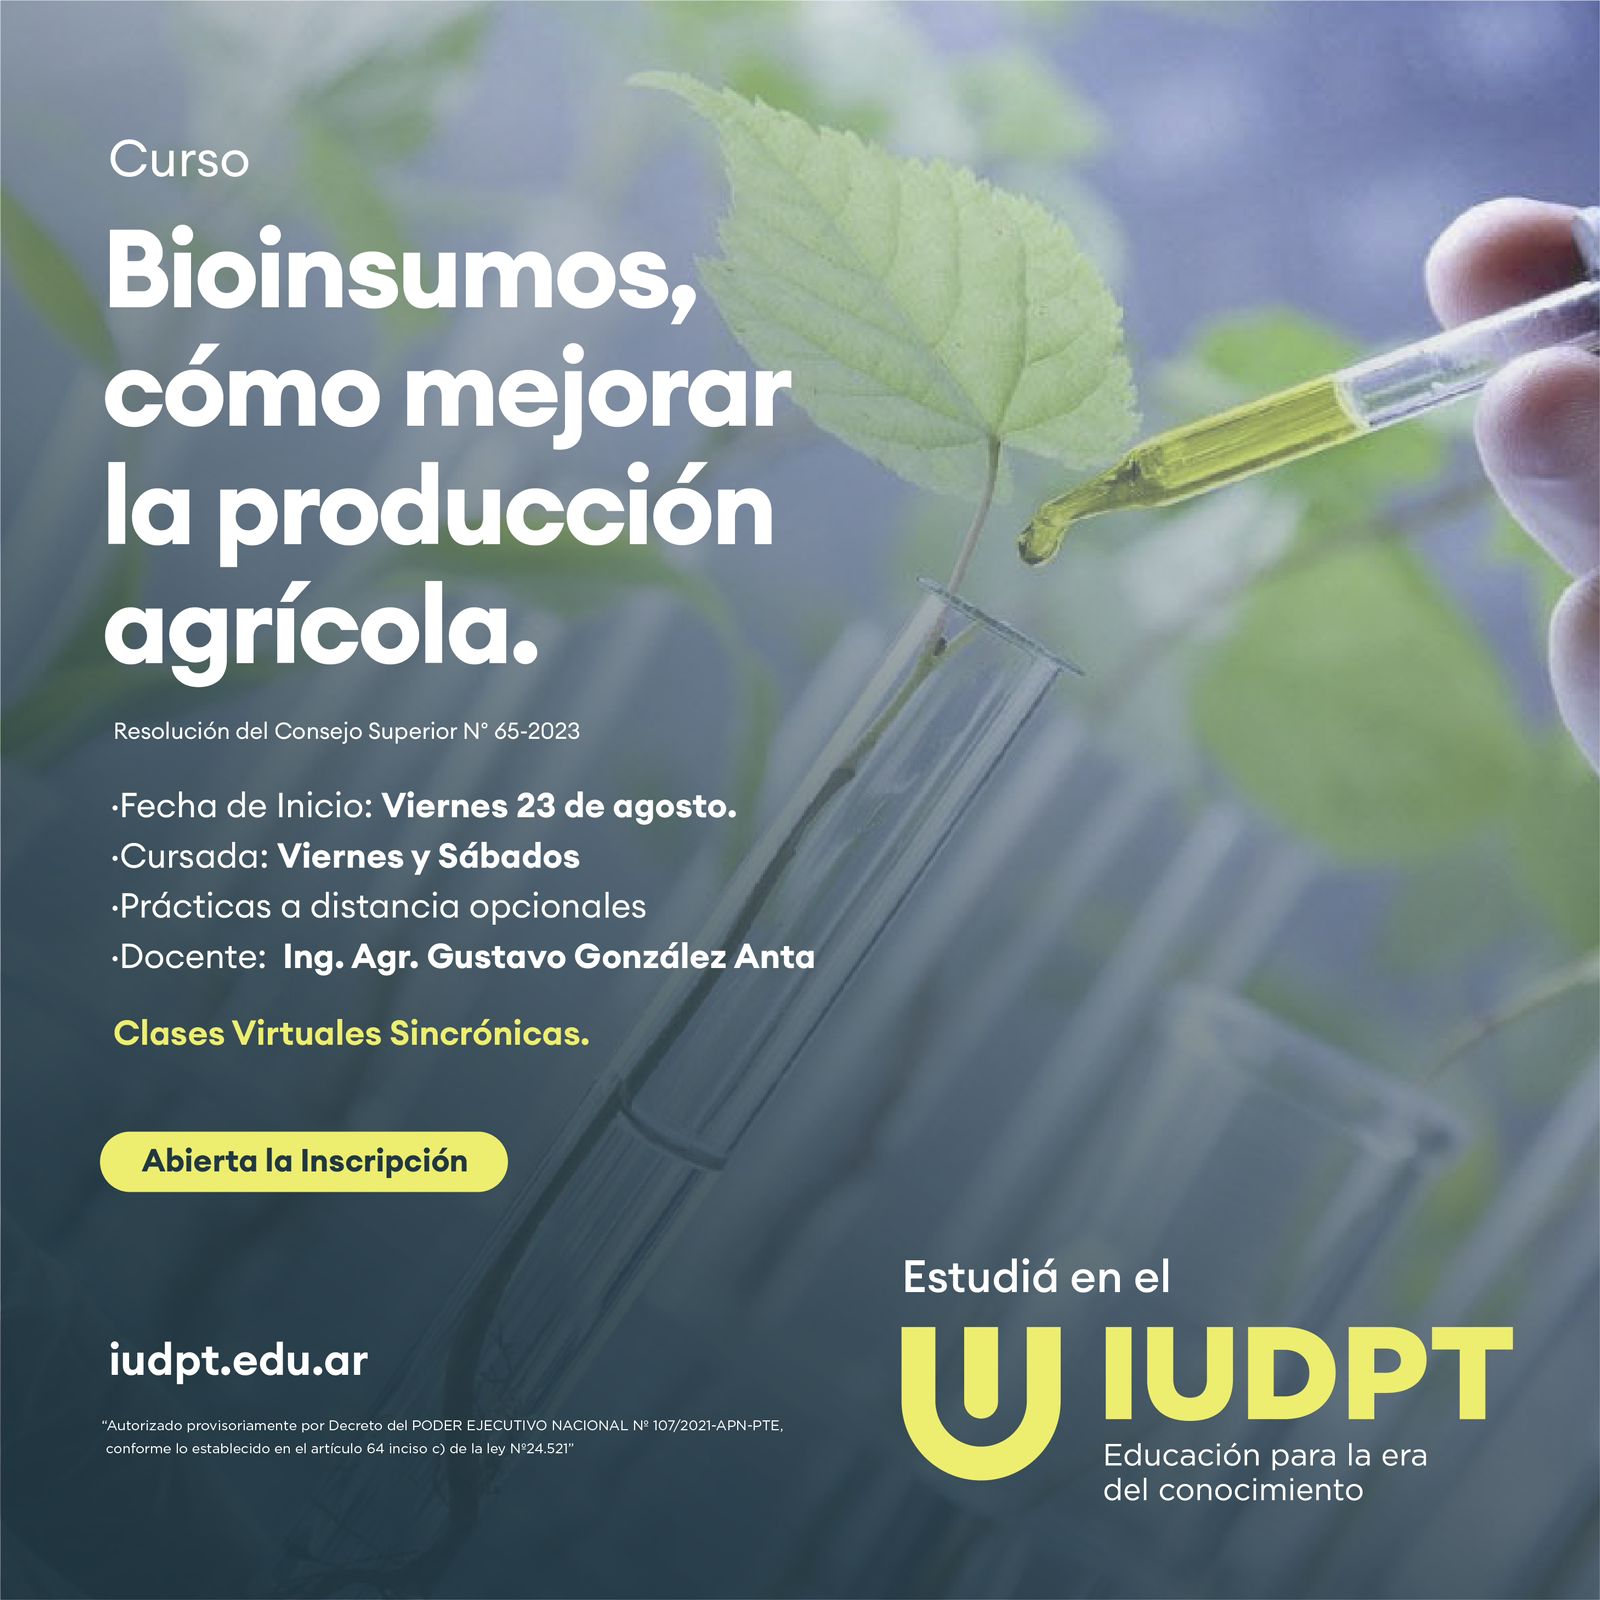 📣|Curso de Bioinsumos: Cómo mejorar la producción agrícola|